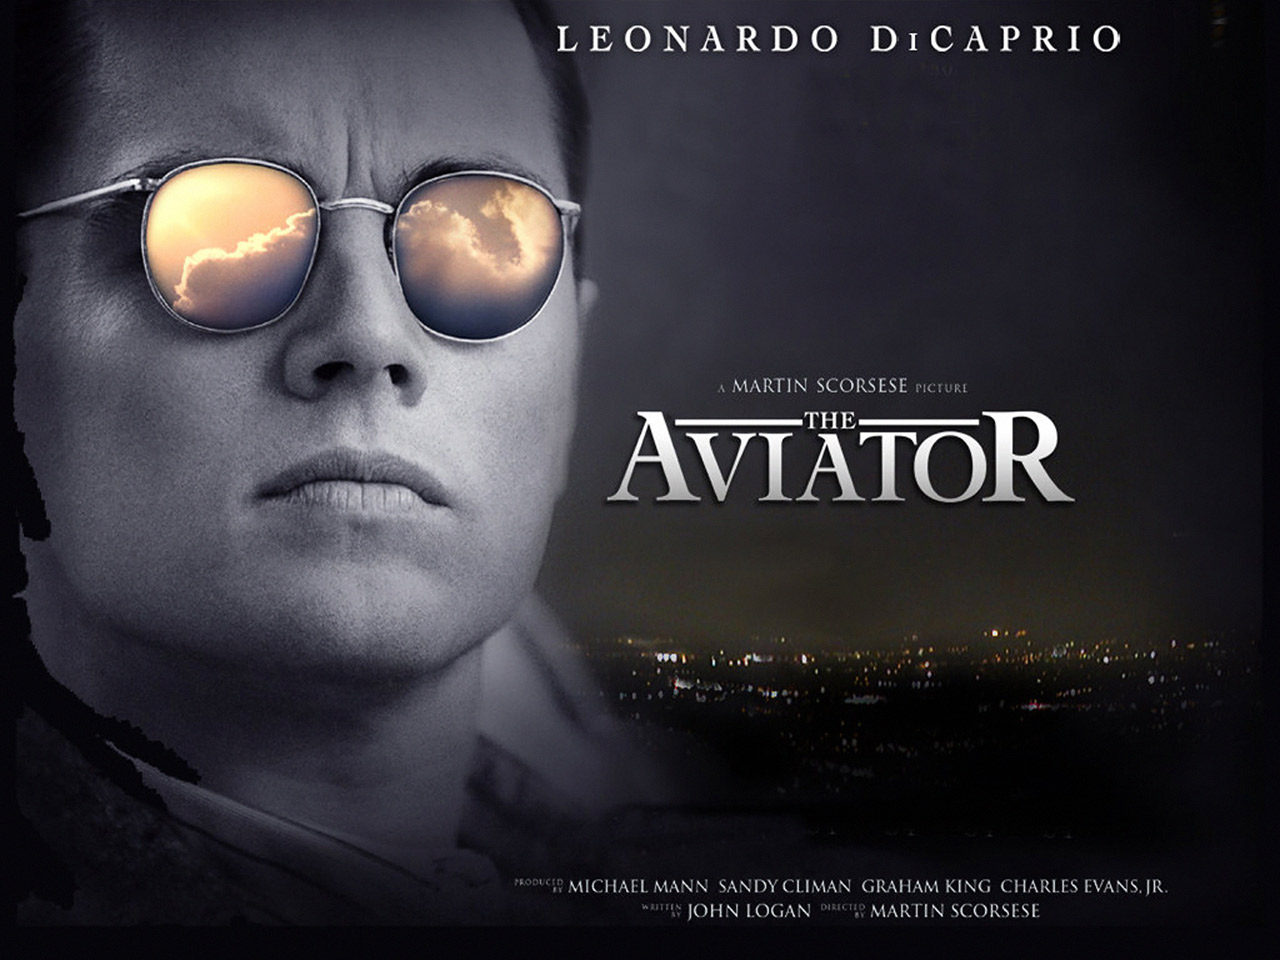 http://4.bp.blogspot.com/-tIxurbXiJT8/T0FkPn-zc8I/AAAAAAAADRk/B_EoR7F8xnI/s1600/The_Aviator,_2004,_Leonardo_DiCaprio.jpg